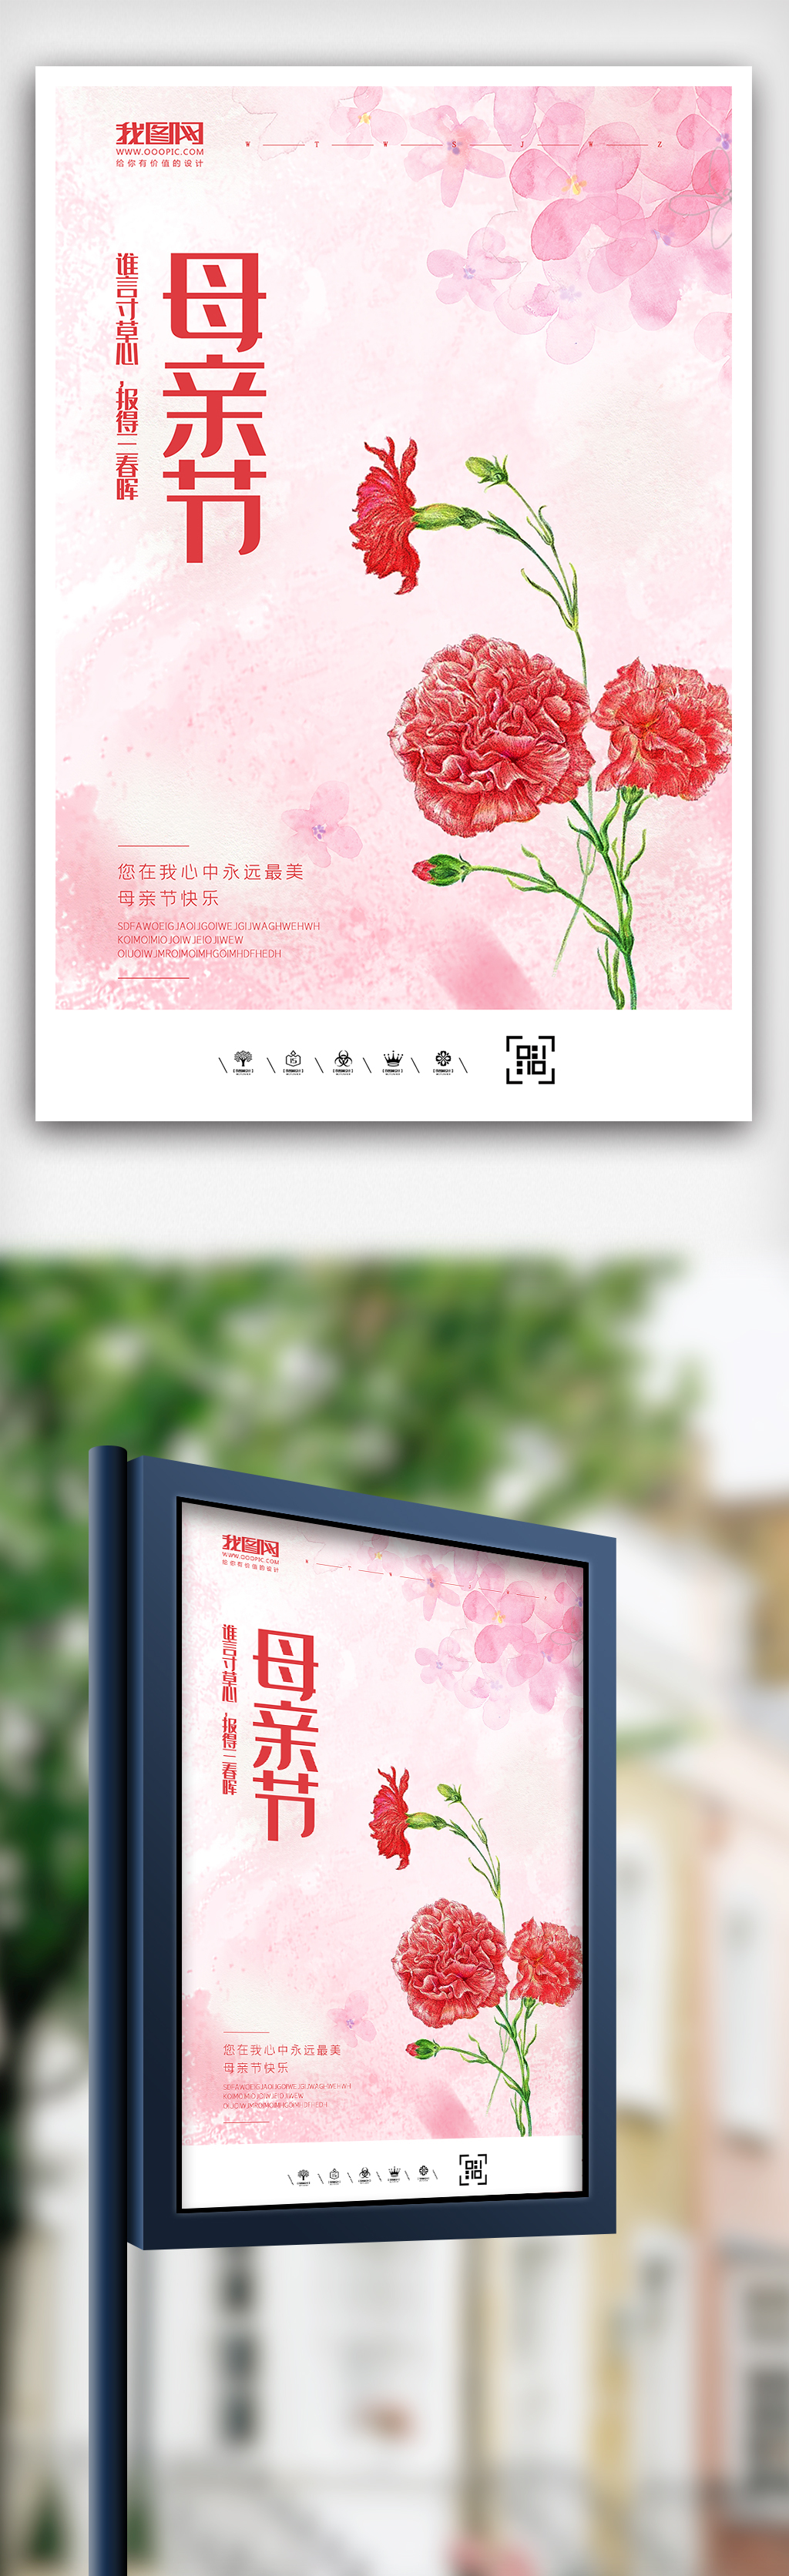 粉色温馨水彩风格母亲节海报图片